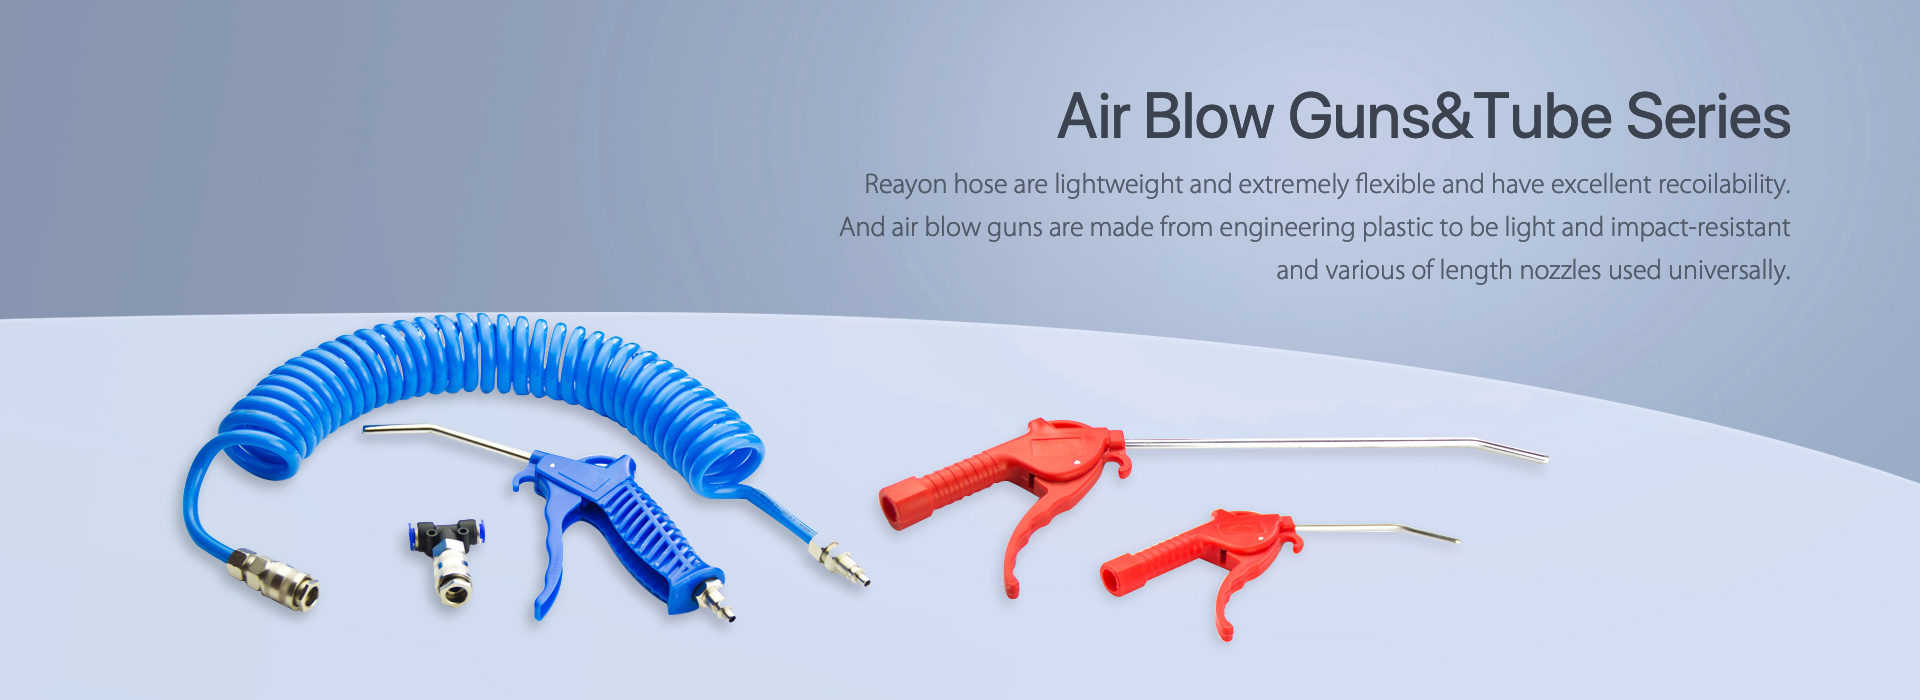 Air-Blow-GunsTube-Seri